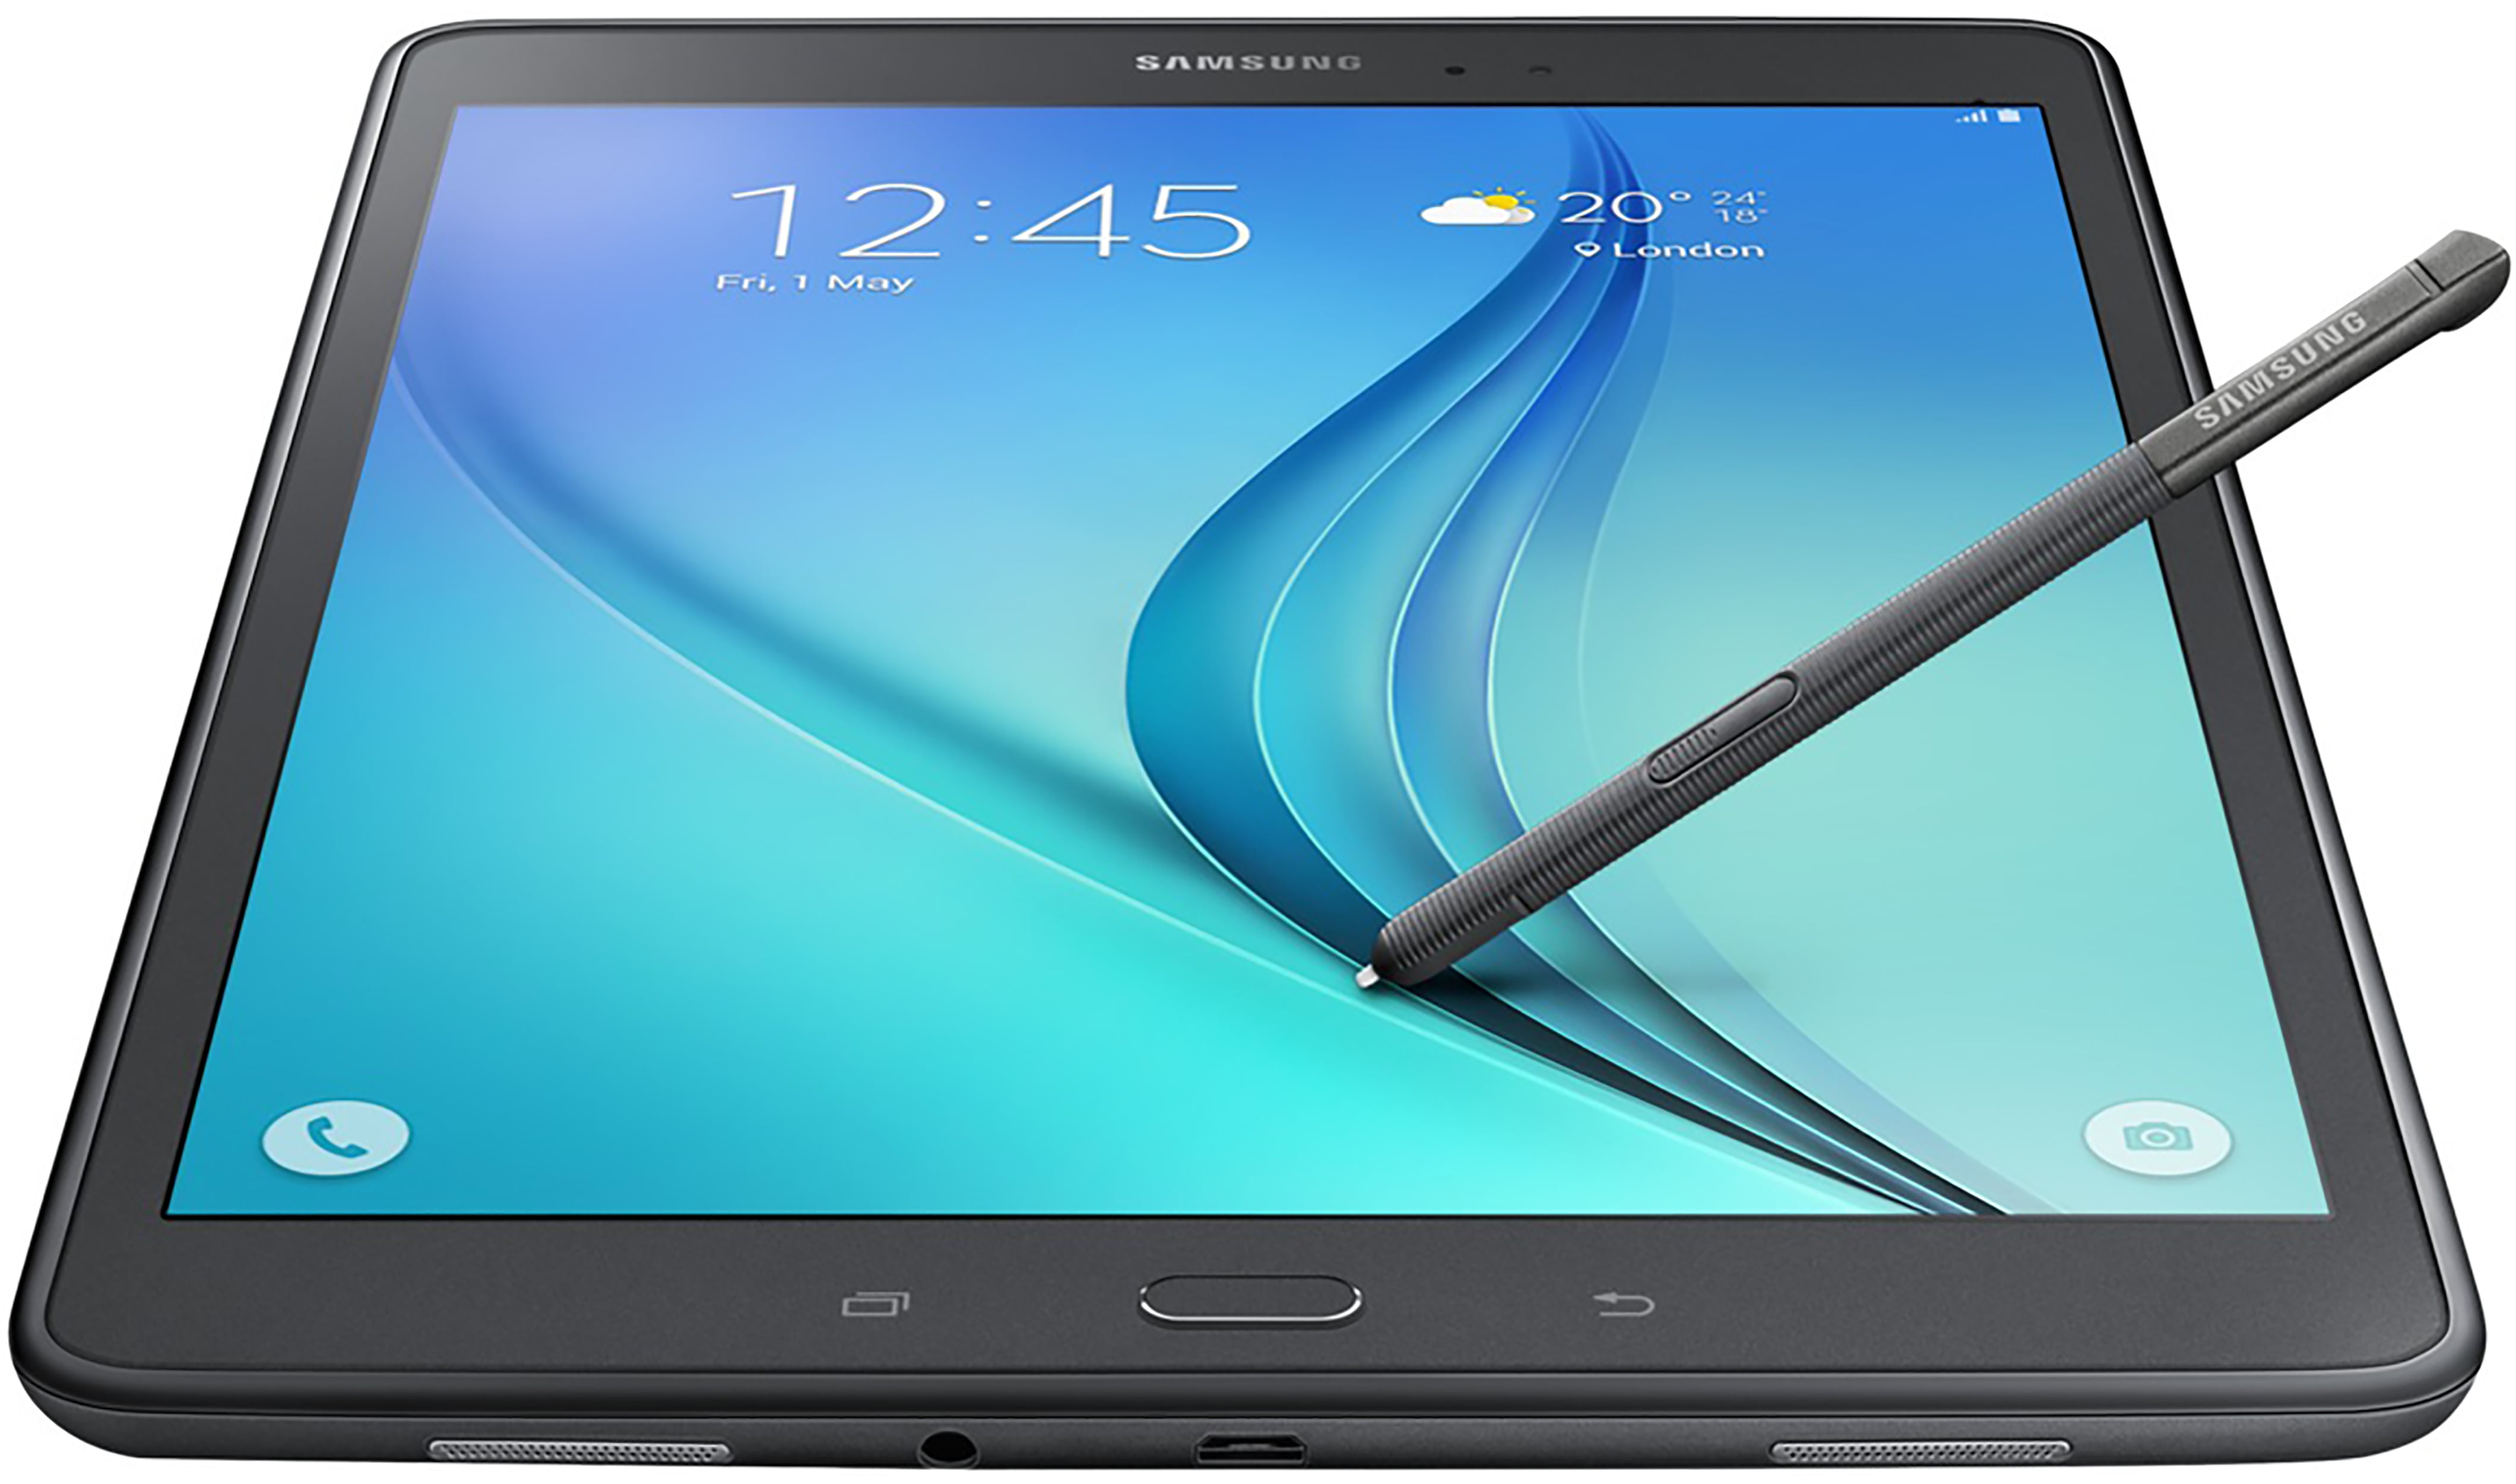 Galaxy Tab A with S-Pen 9.7 16GB (Wi-Fi) Tablets - SM-P550NZAAXAR